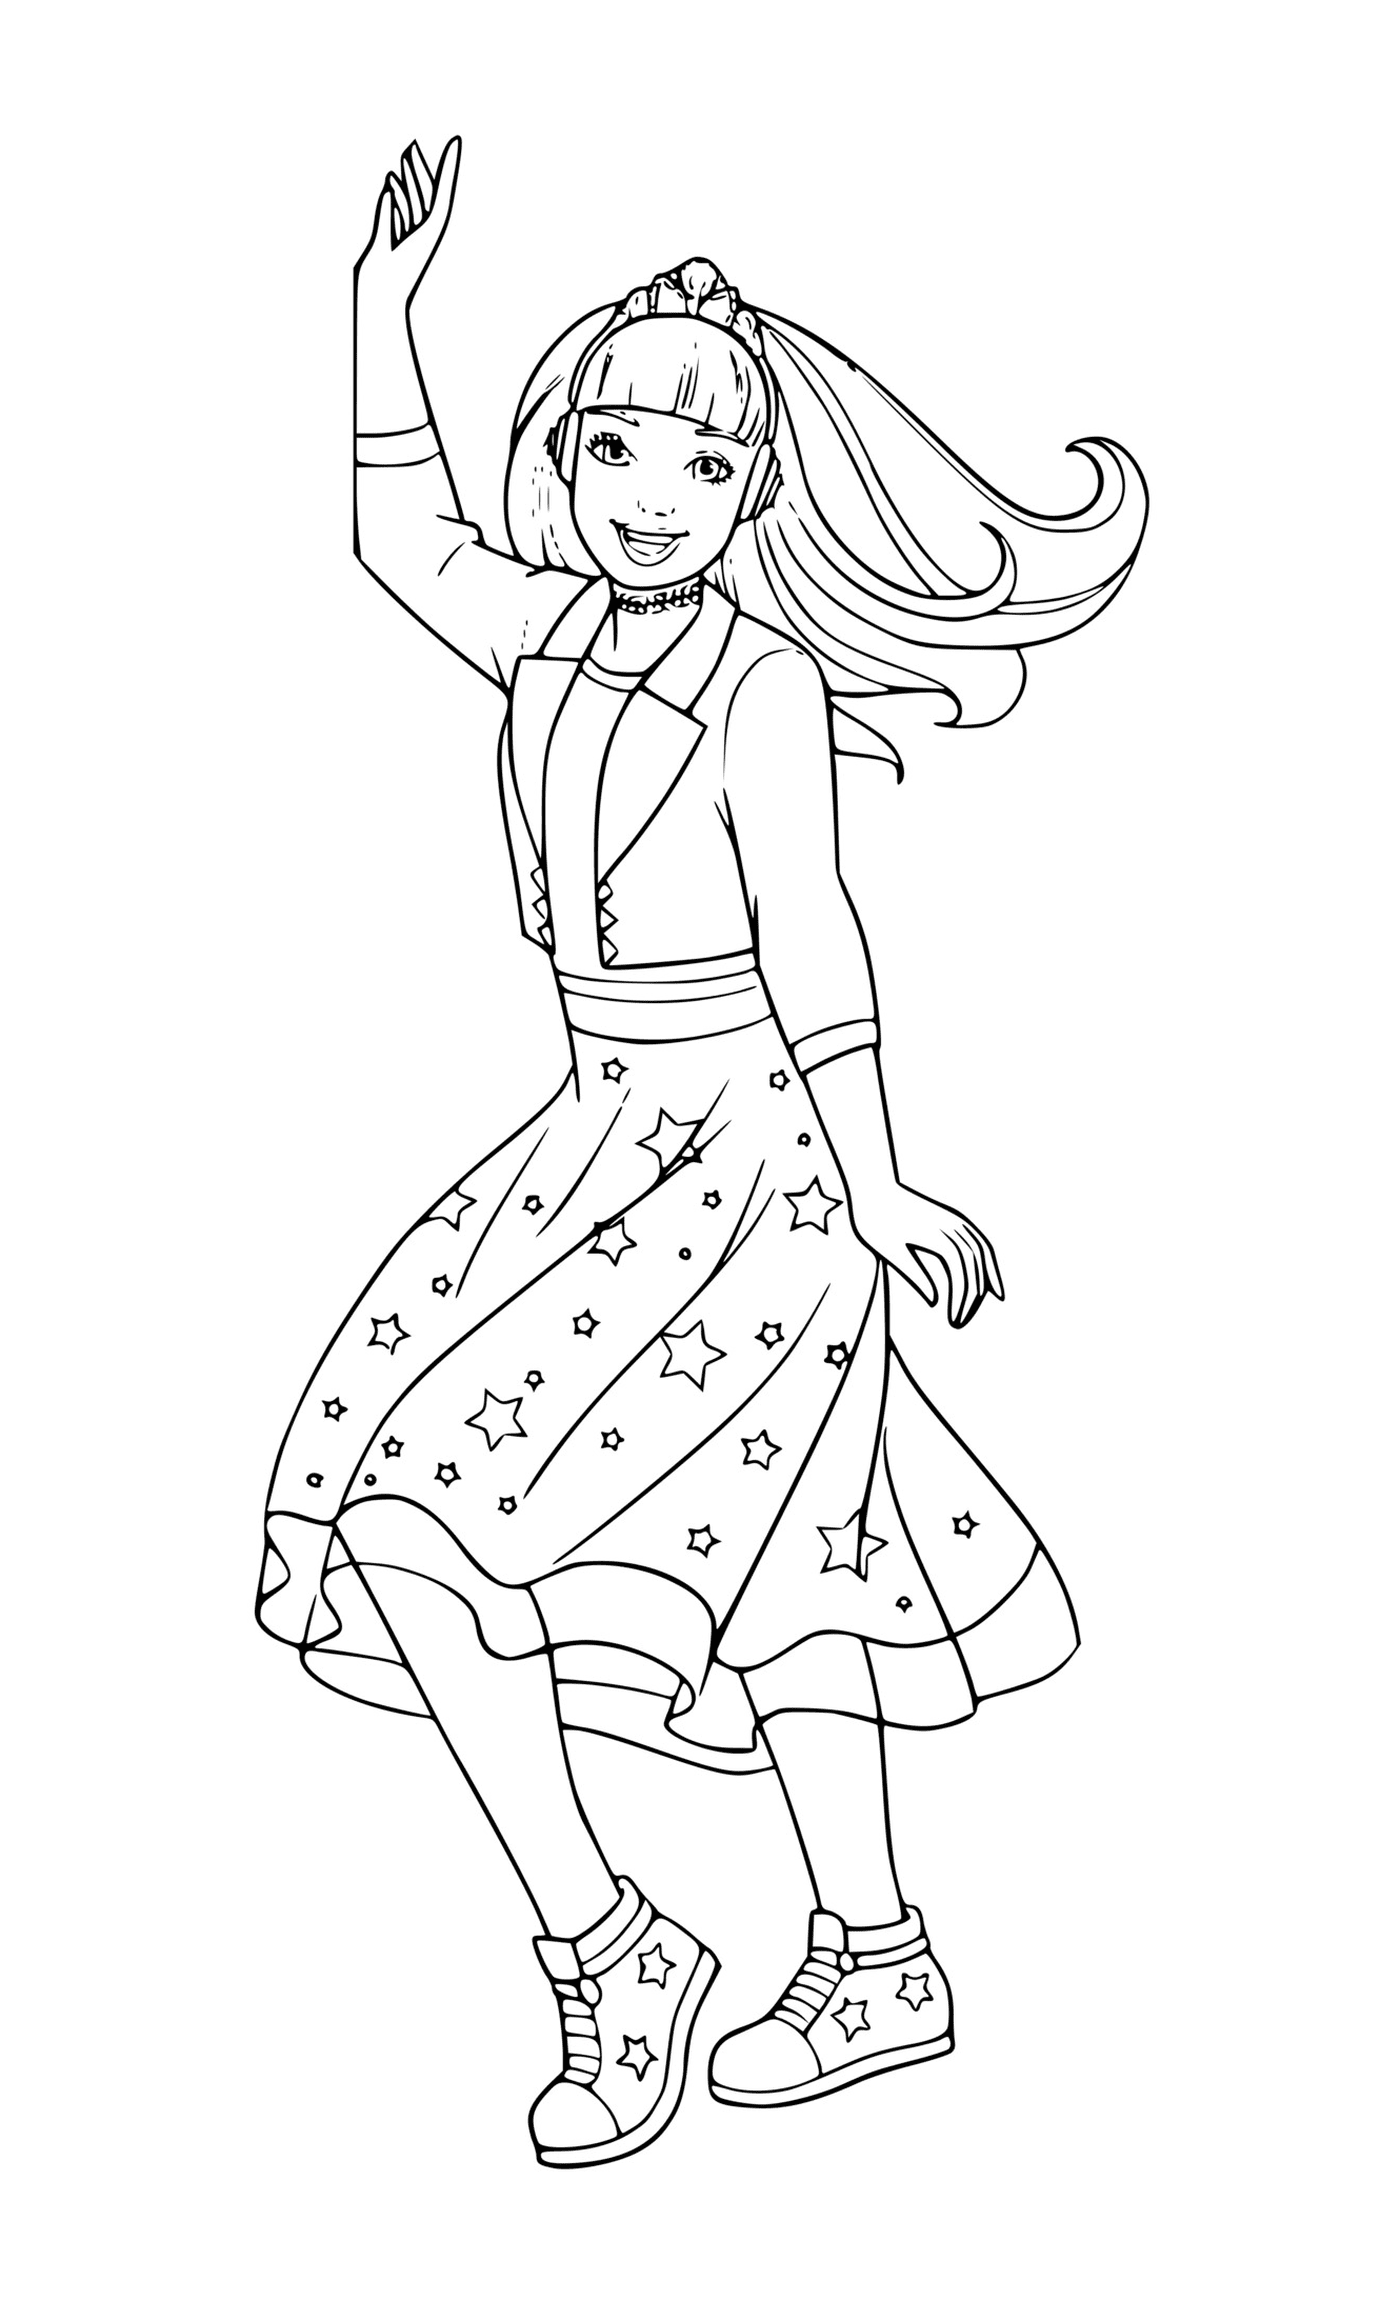  Uma menina em um vestido estrelado dançando 